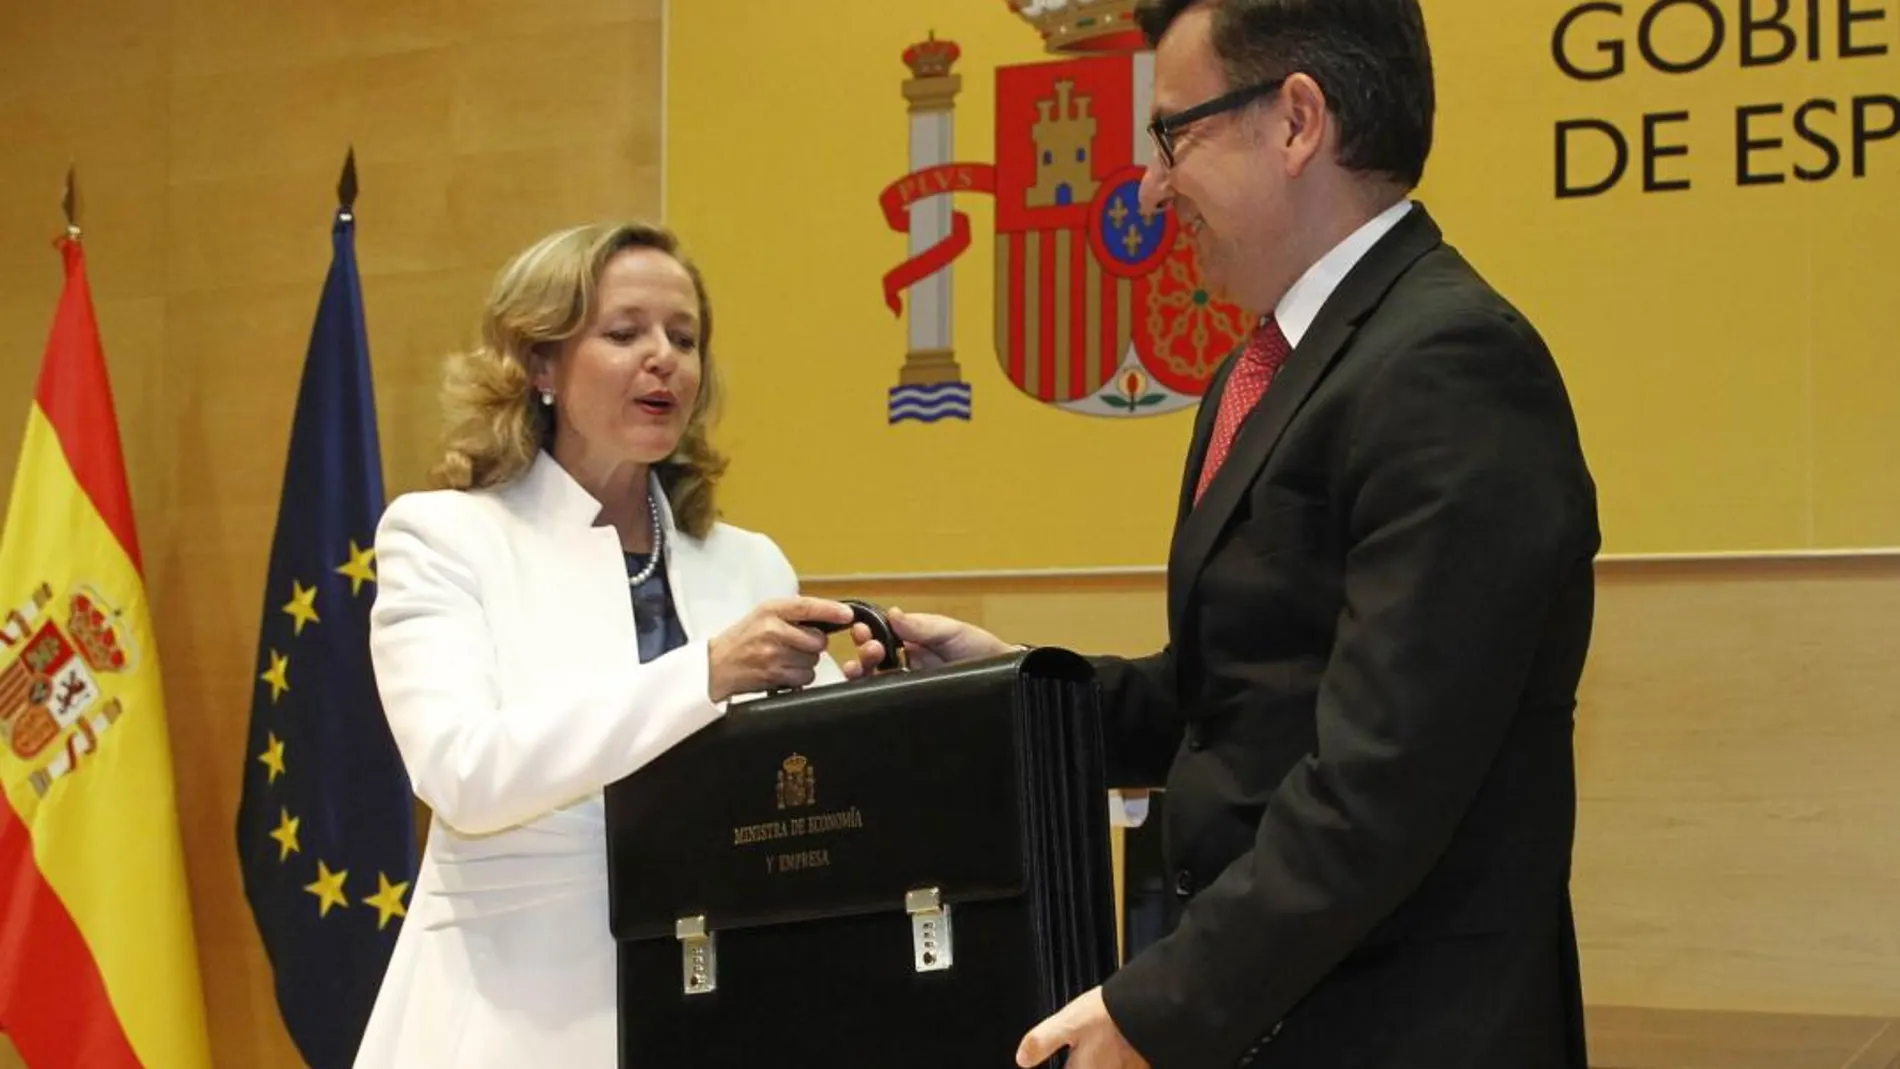 La ministra de Economía Nadia Calviño, recibe la cartera de su antecesor en el cargo Román Escolano /Connie G. Santos